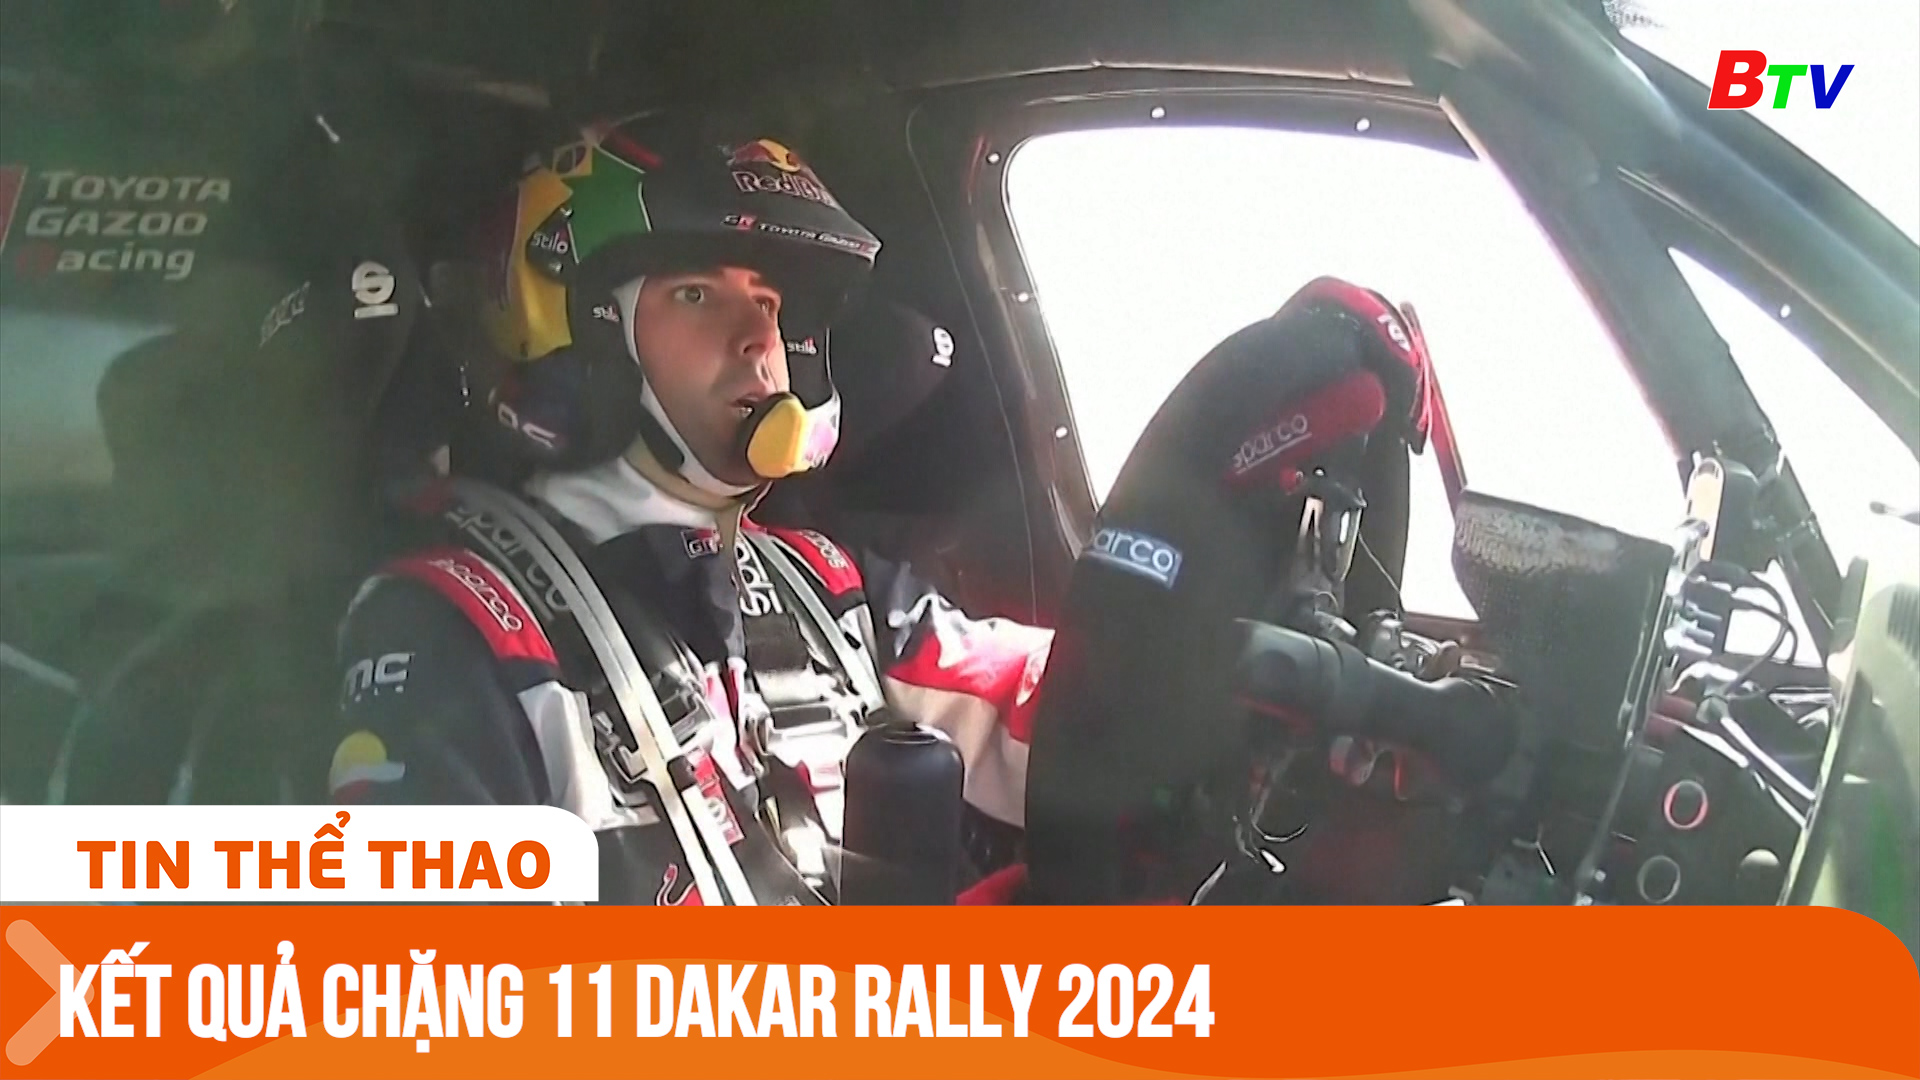 Kết quả chặng 11 Dakar Rally 2024 | Tin Thể thao 24h